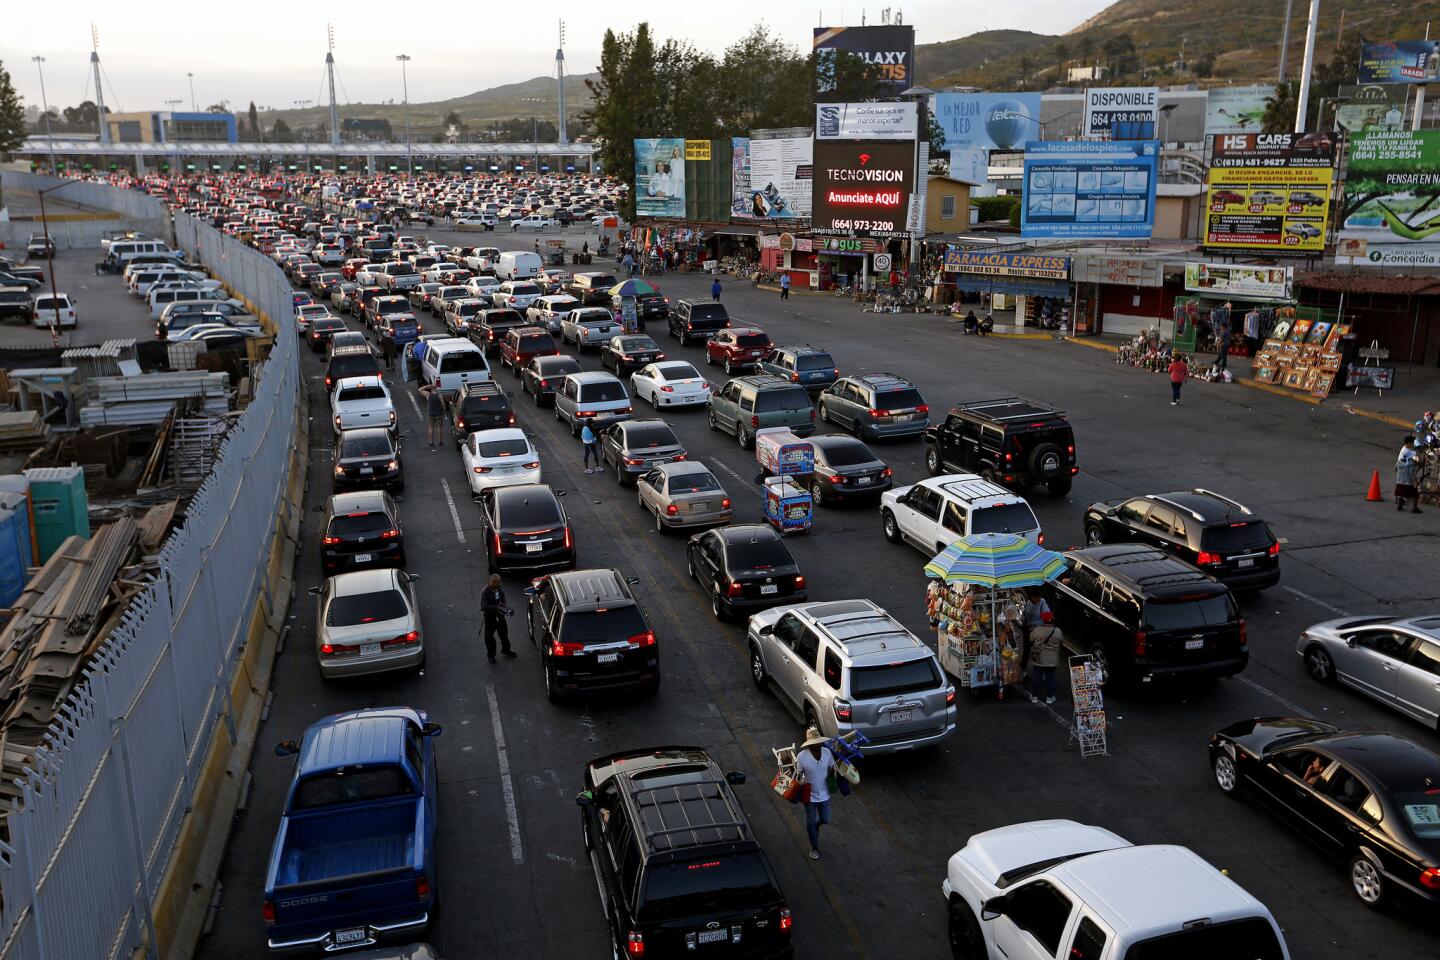 Journalists at Zeta cover cartel violence in Tijuana